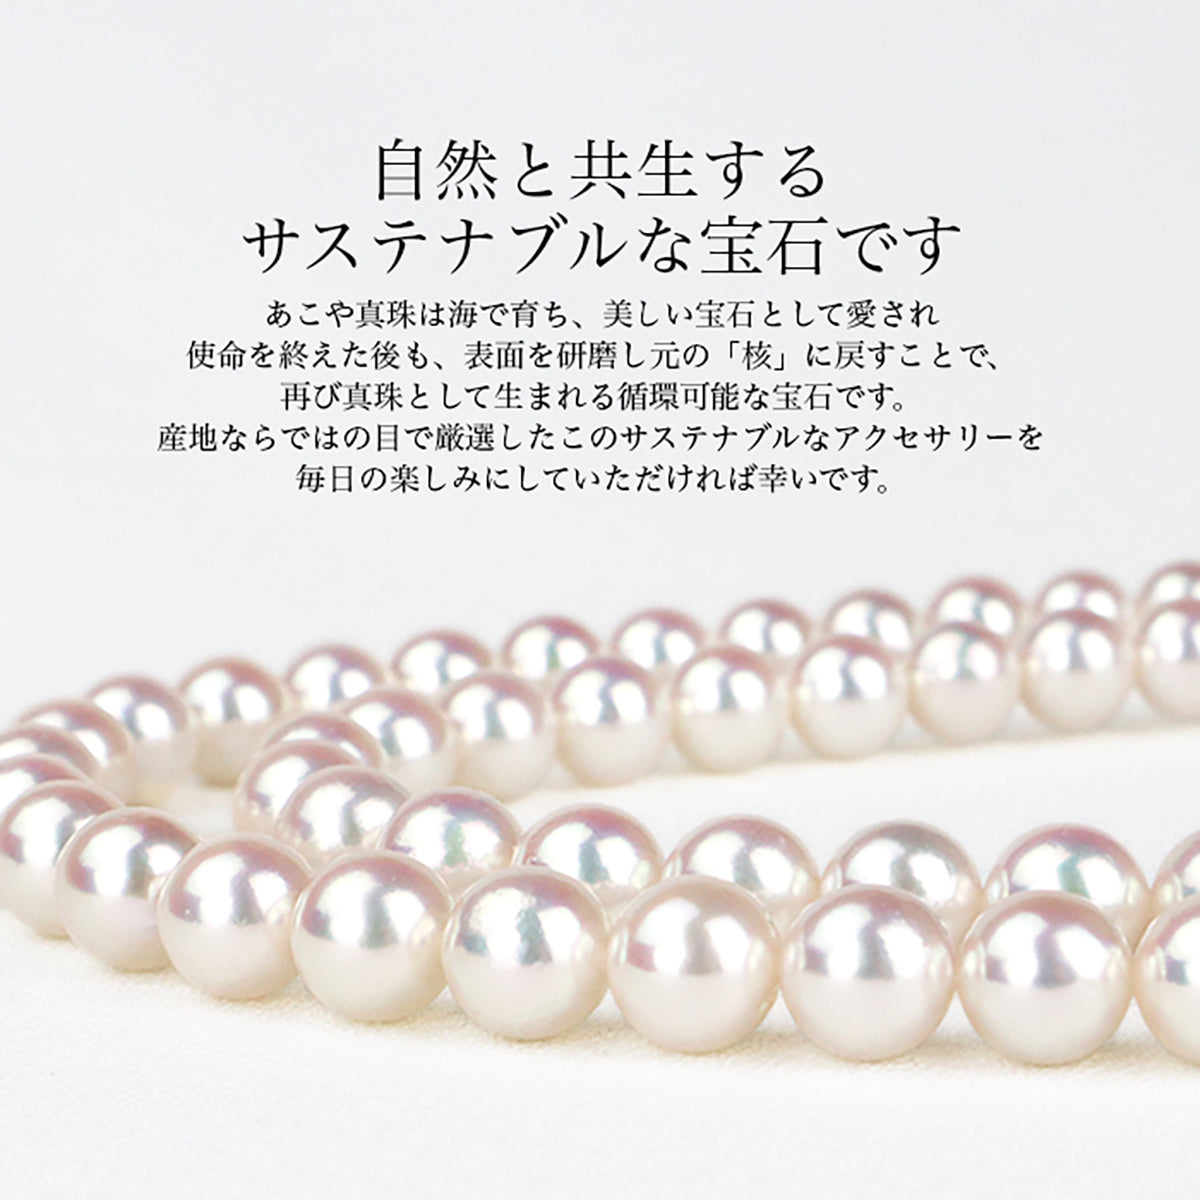 花珠真珠 フォーマルネックレス 2点セット【8.0-8.5mm】 (ピアス